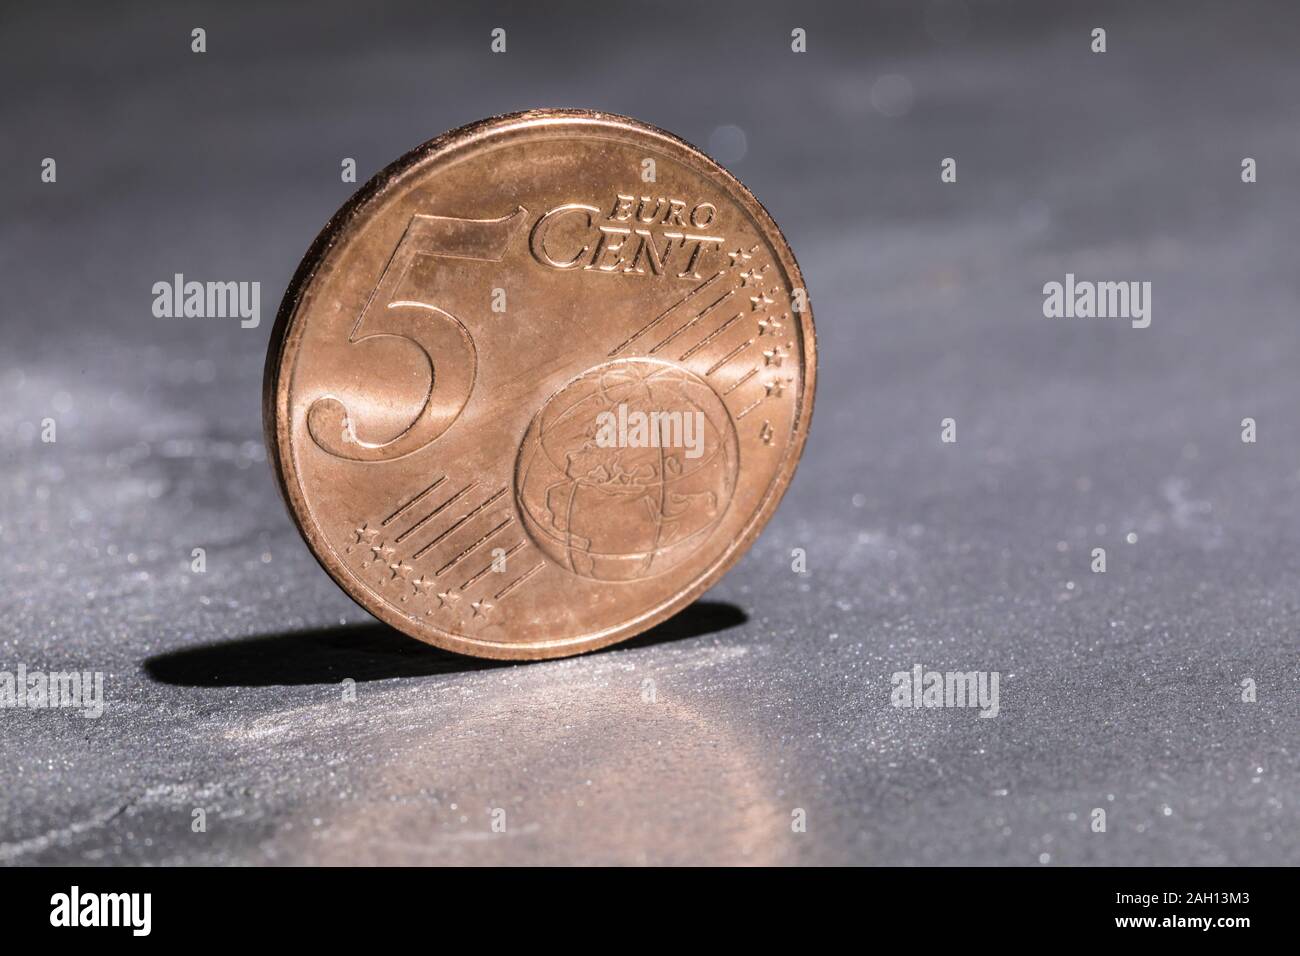 Fünf Euro Cent auf grauem Hintergrund Stockfoto